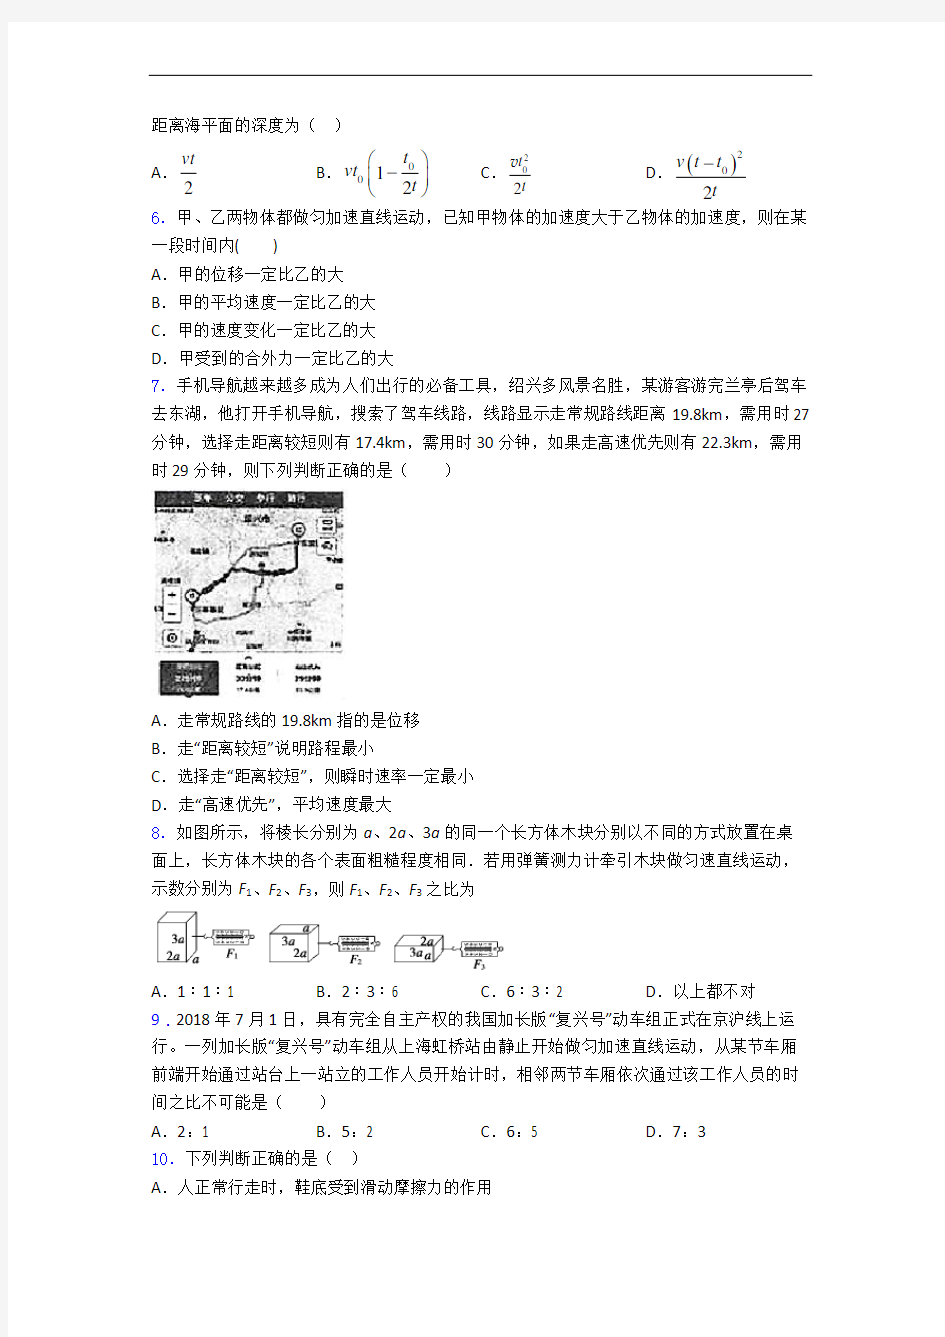 河北张家口市正博高级中学高一物理上册第一学期11月质量检测考试题